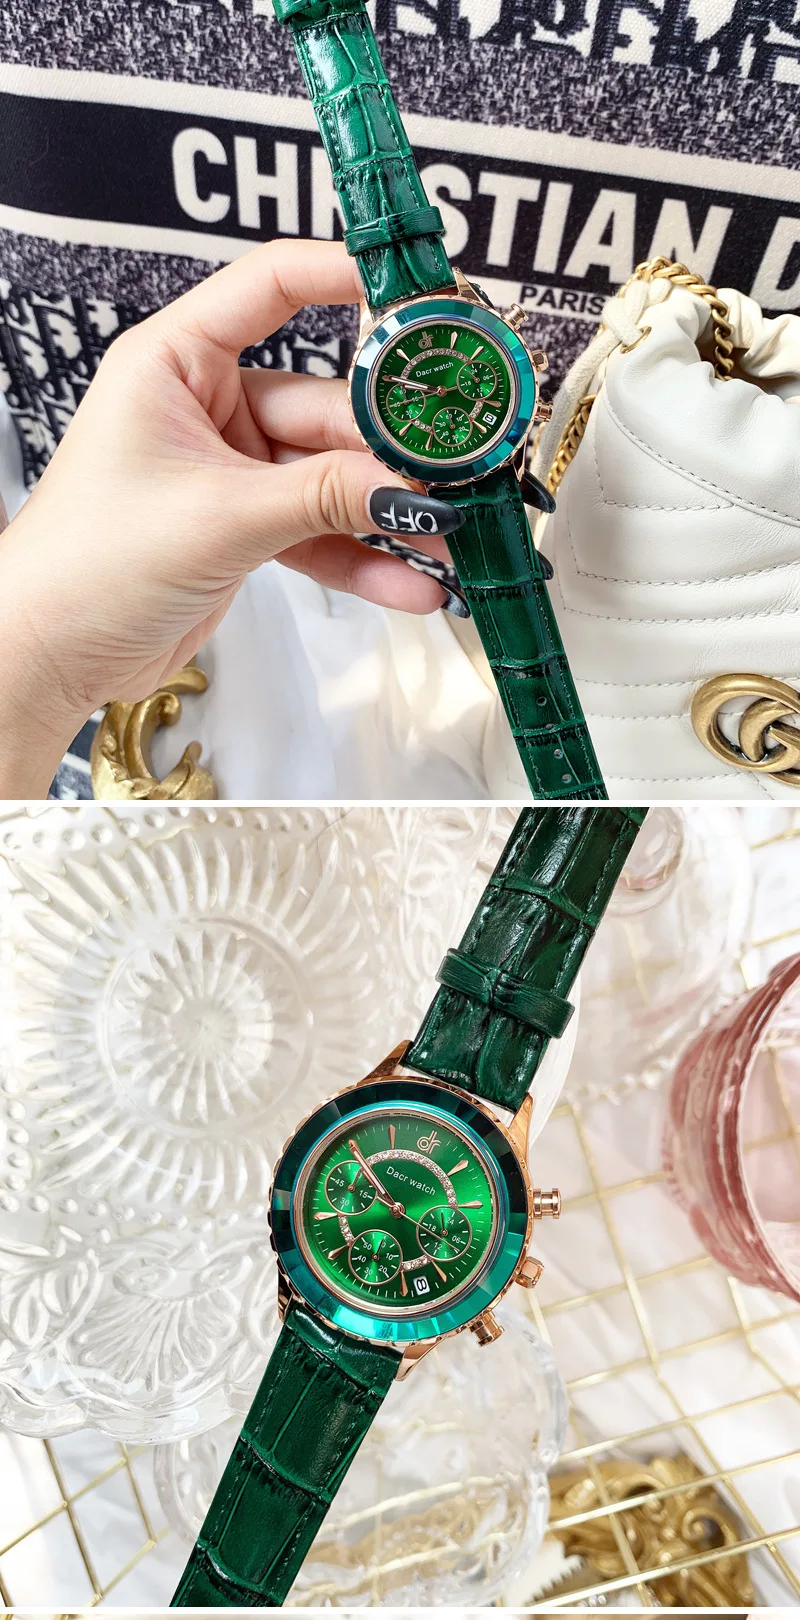 Горячая Распродажа Ins Брендовые женские часы со стразами кожаные нарядные часы рефракционные зеркальные шестиигольчатые студенческие часы с календарем